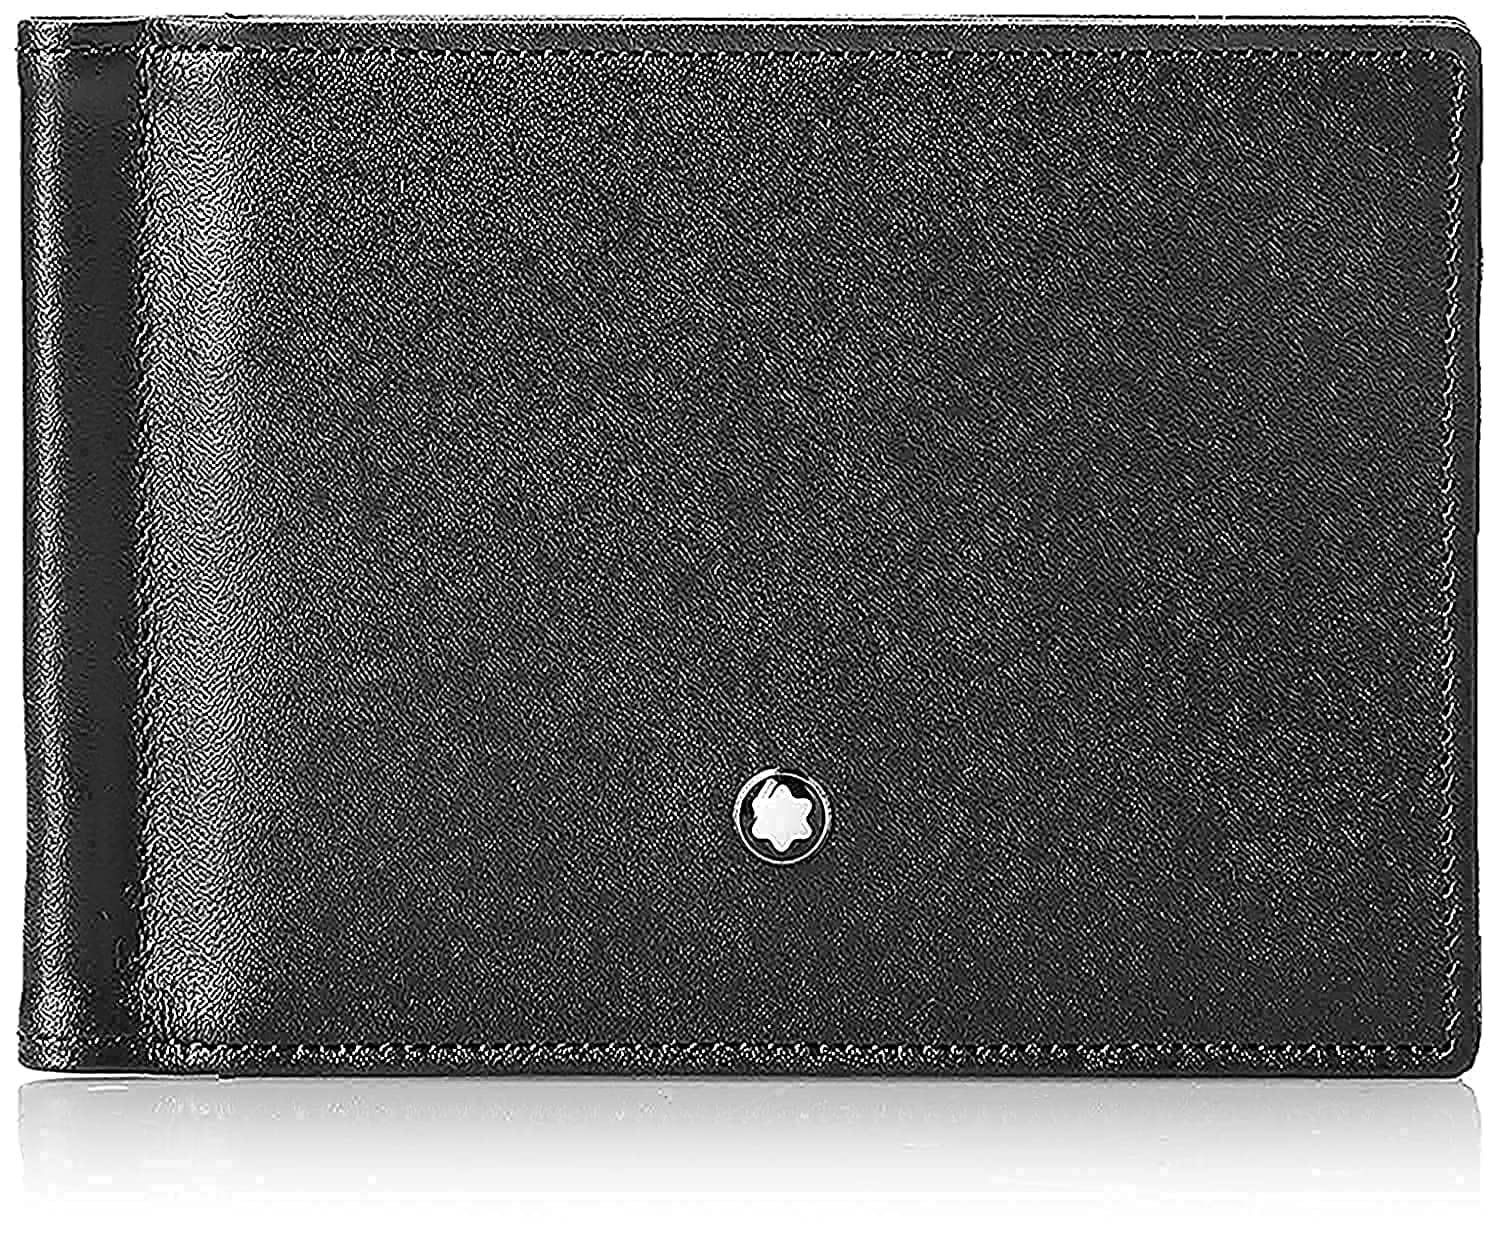 Montblanc MEISTERSTÜCK BRIEFTASCHE No. 05525 5525 Unisex - Erwachsene Portemonnaies, na schwarz (na), 11 cm